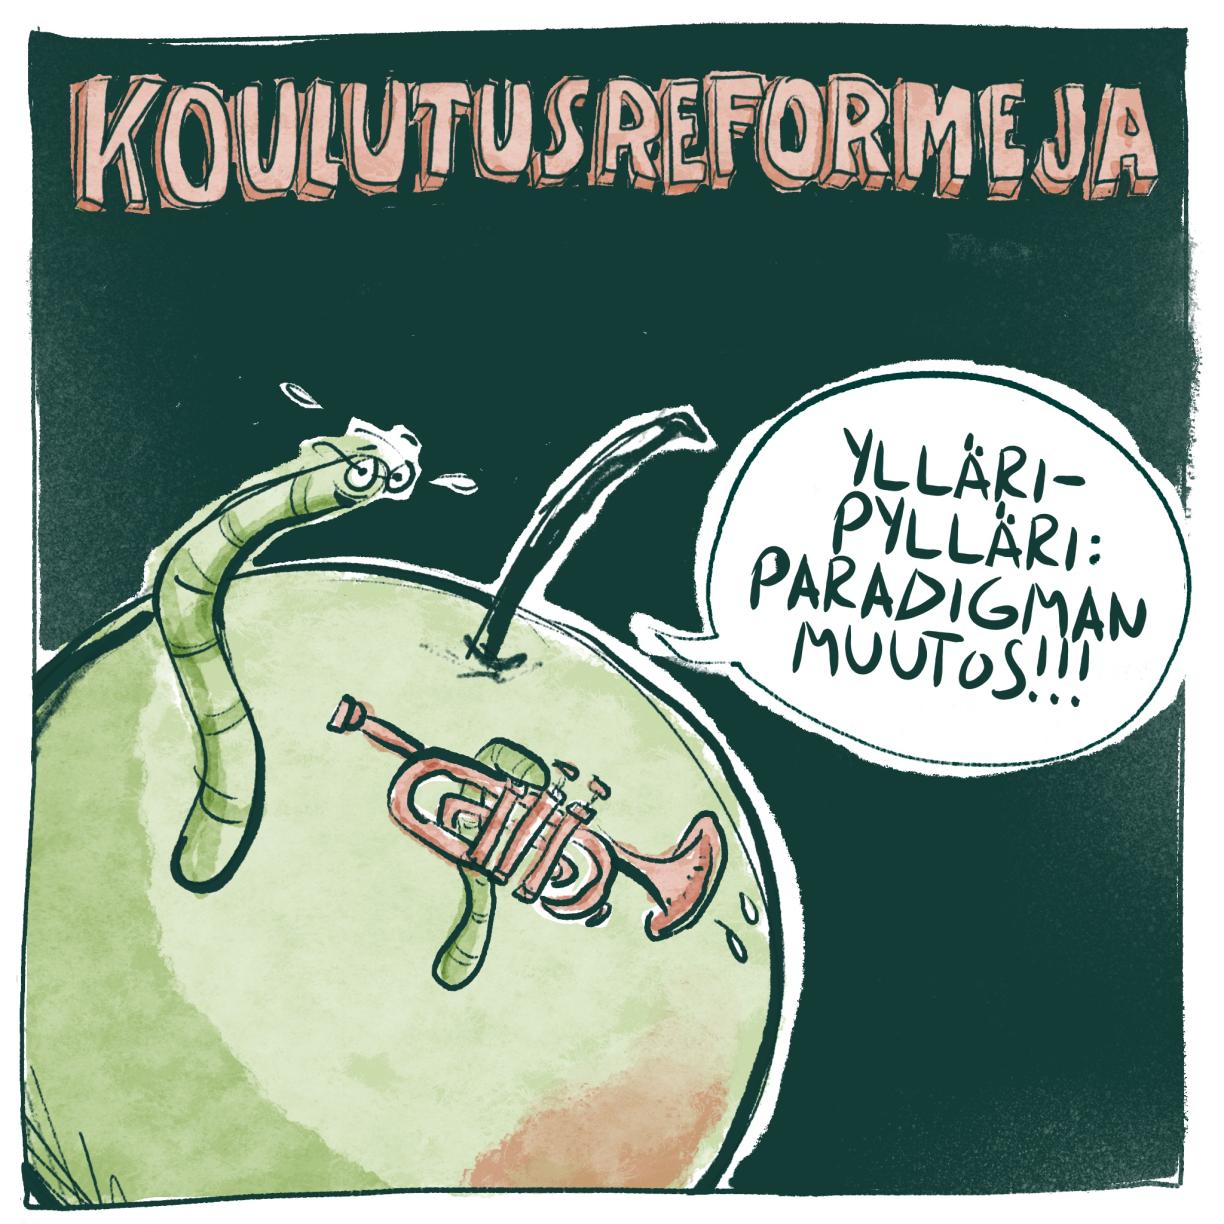 Otsikko: Koulutusreformeja. Kuvassa omenaan kaivautunut mato, jolla on trumpetti. Mato sanoo: Ylläripylläri: paradigman muutos!!!